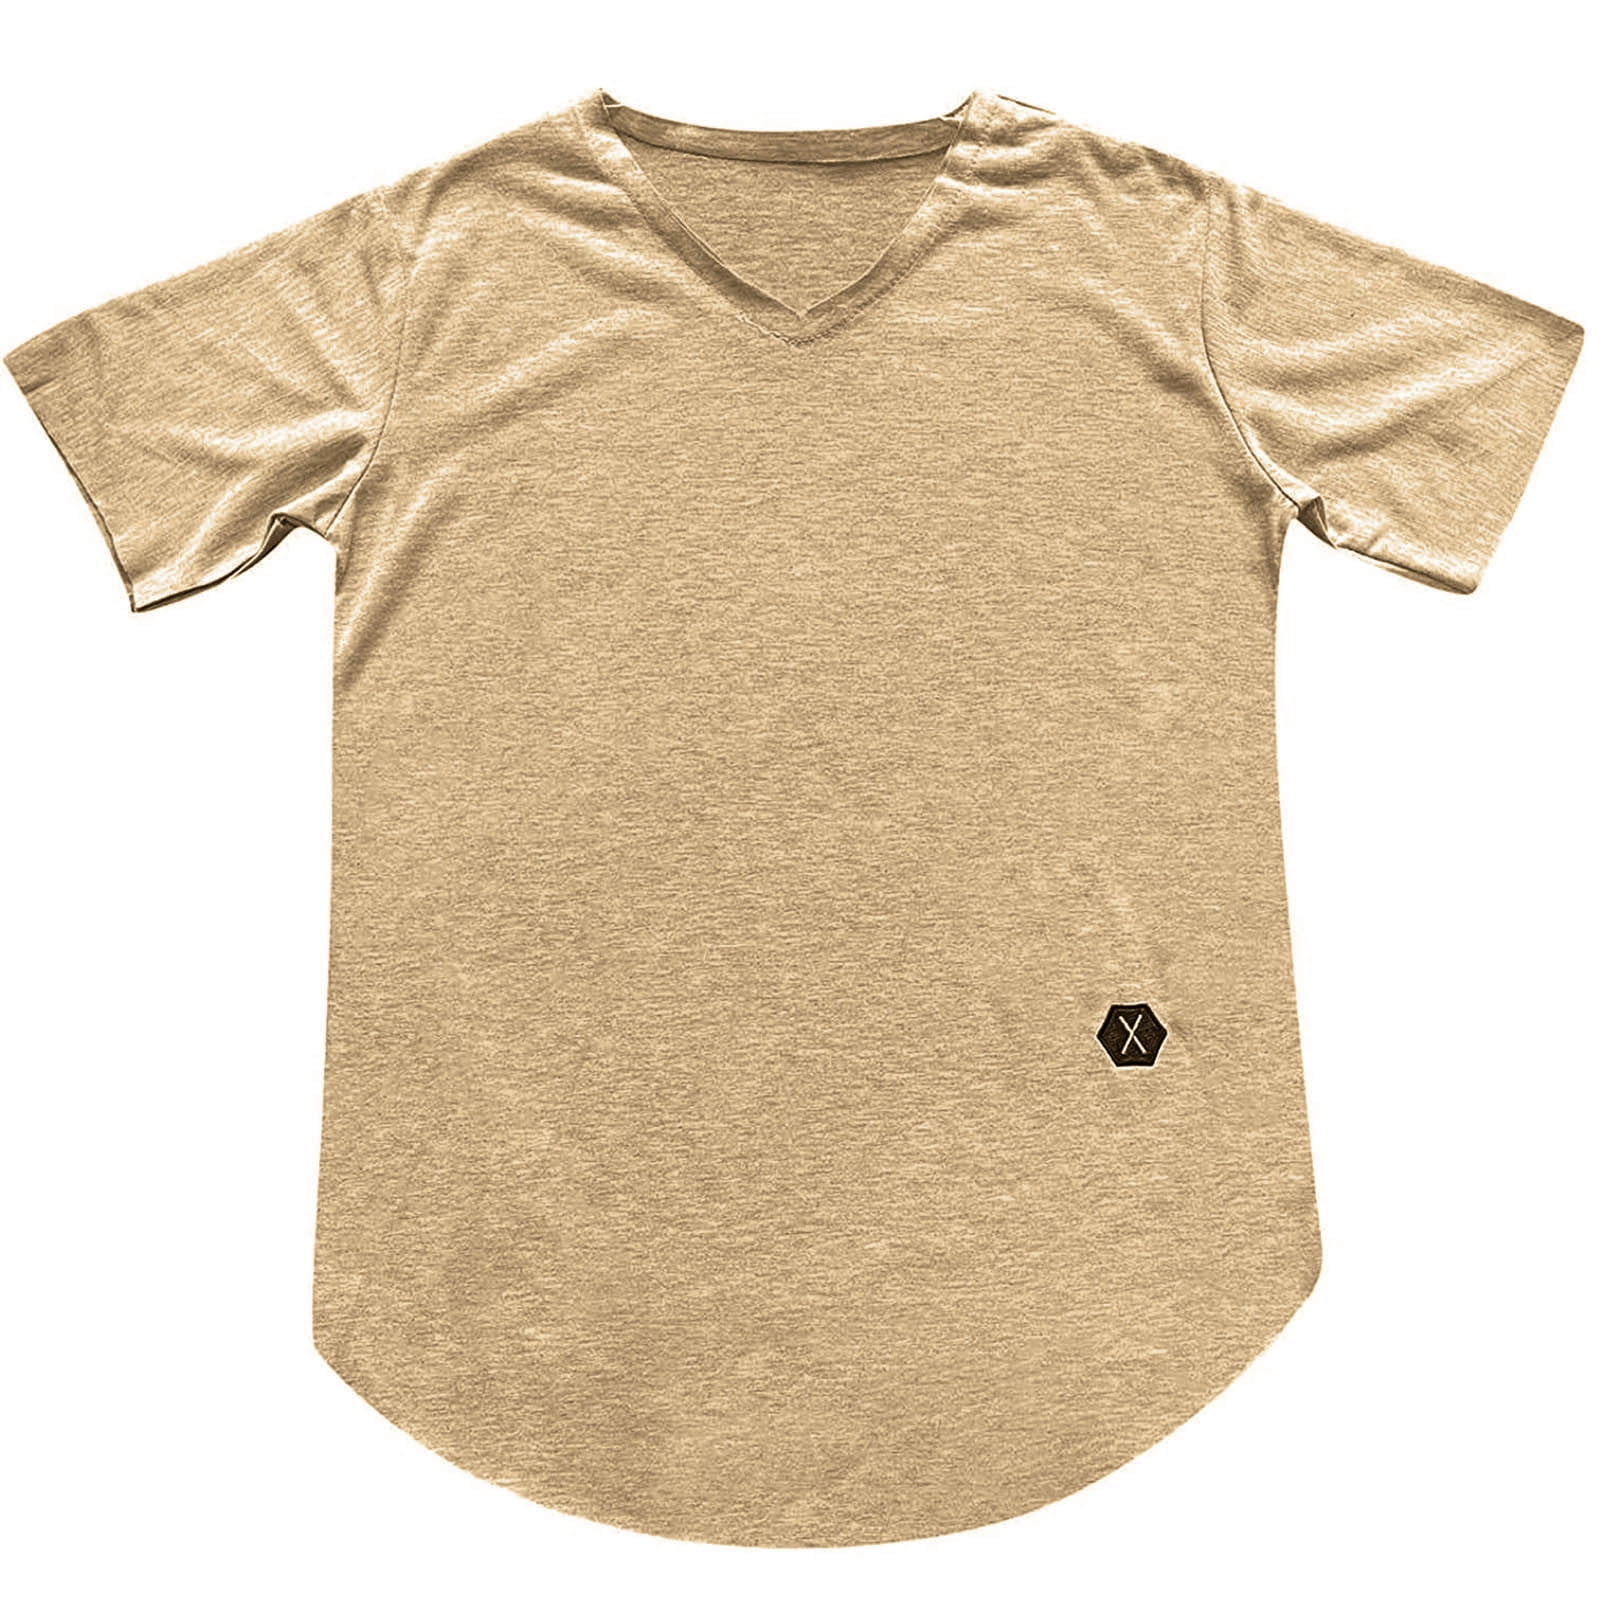 Oversized T Shirts for Men Men's Summer Plain Color Slim Fit V-neck Trendy Short Sleeve Top T-shirt Shirts for Men Mens V Neck T Mens Shirts Clearance on Sales Beige